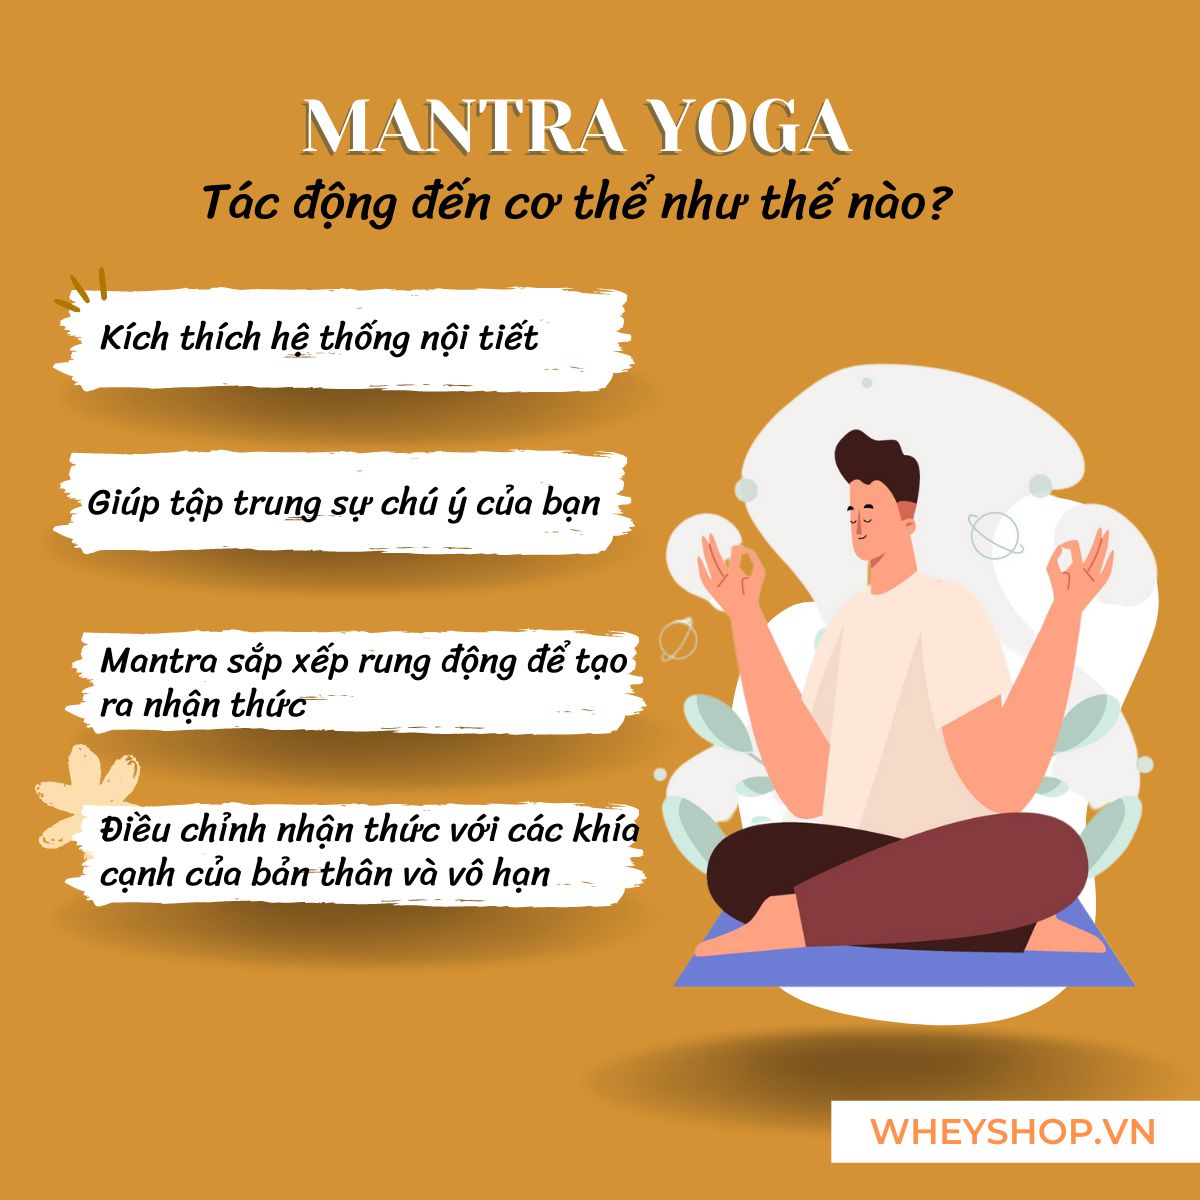 Mantra là gì ? Đây là một khái niệm khá mới mẻ ở Việt Nam. Nếu bạn cũng đang quan tâm tới Mantra Yoga, thiền Mantra thì hãy cùng WheyShop tìm hiểu chi tiết...